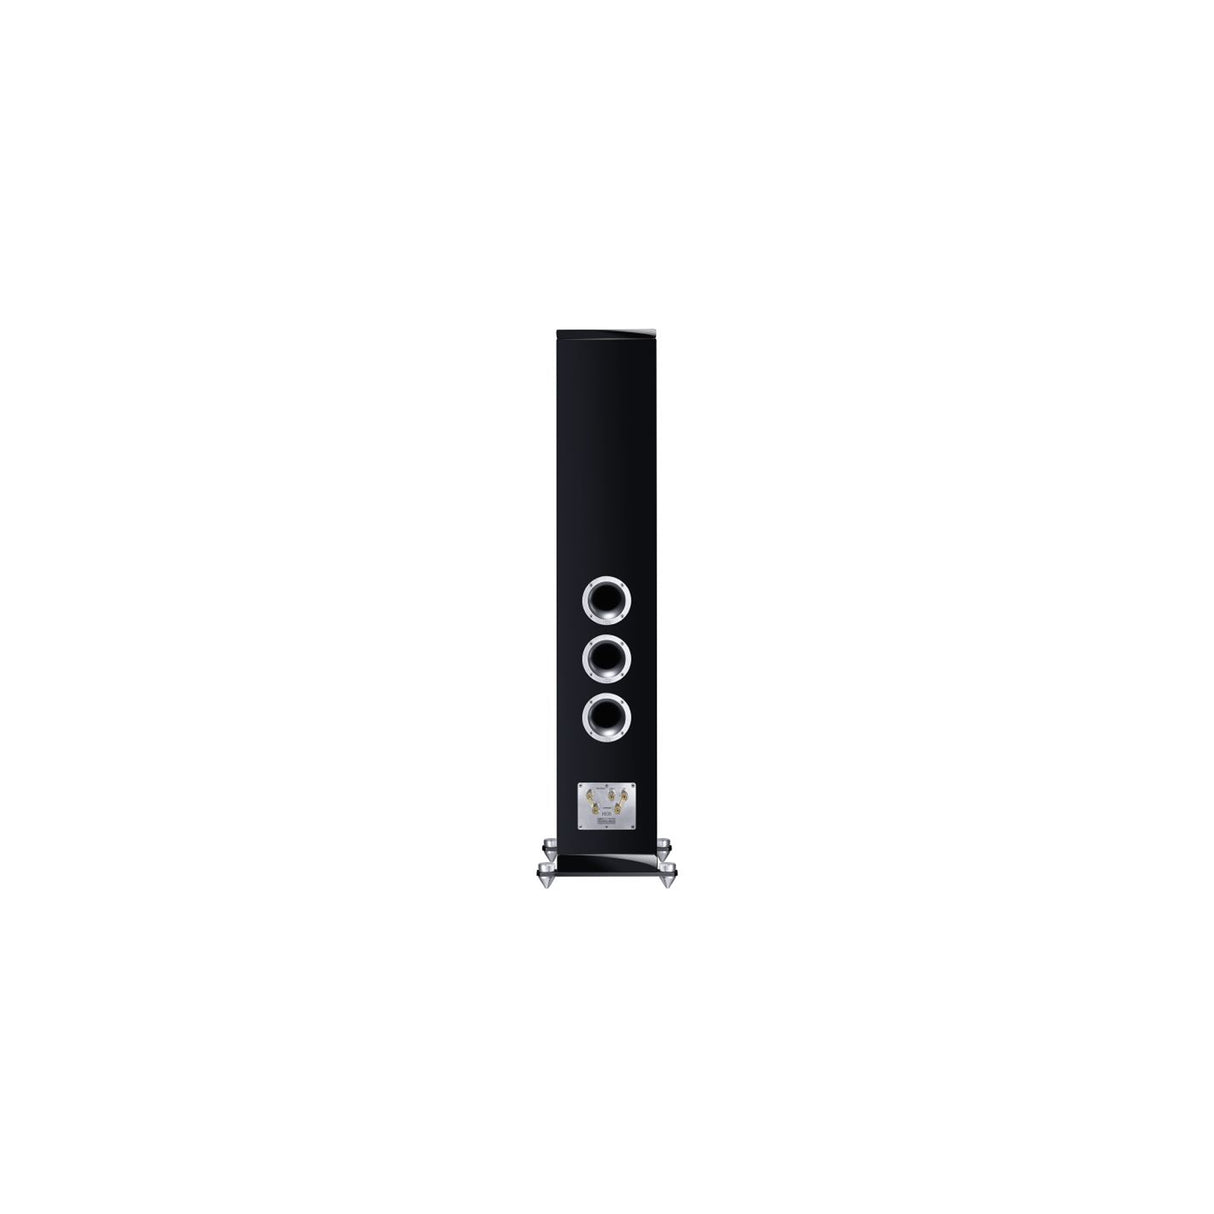 Heco In Vita 9 - 3-Way Floor Standing Speaker (Pair) (Black)